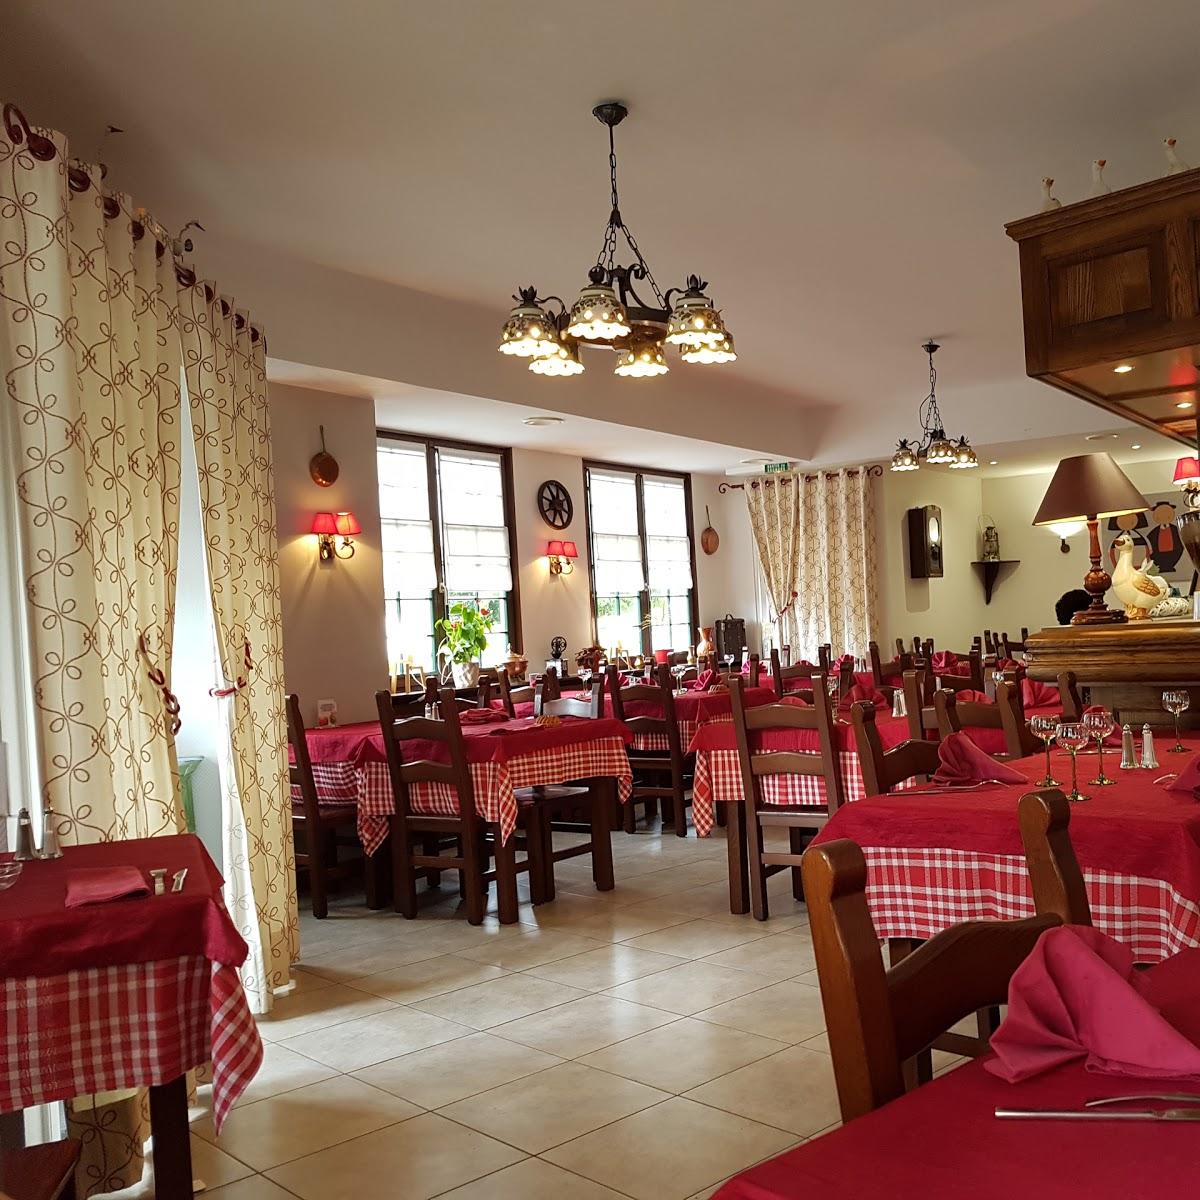 Restaurant "Au Vieux Strasbourg" in Forbach